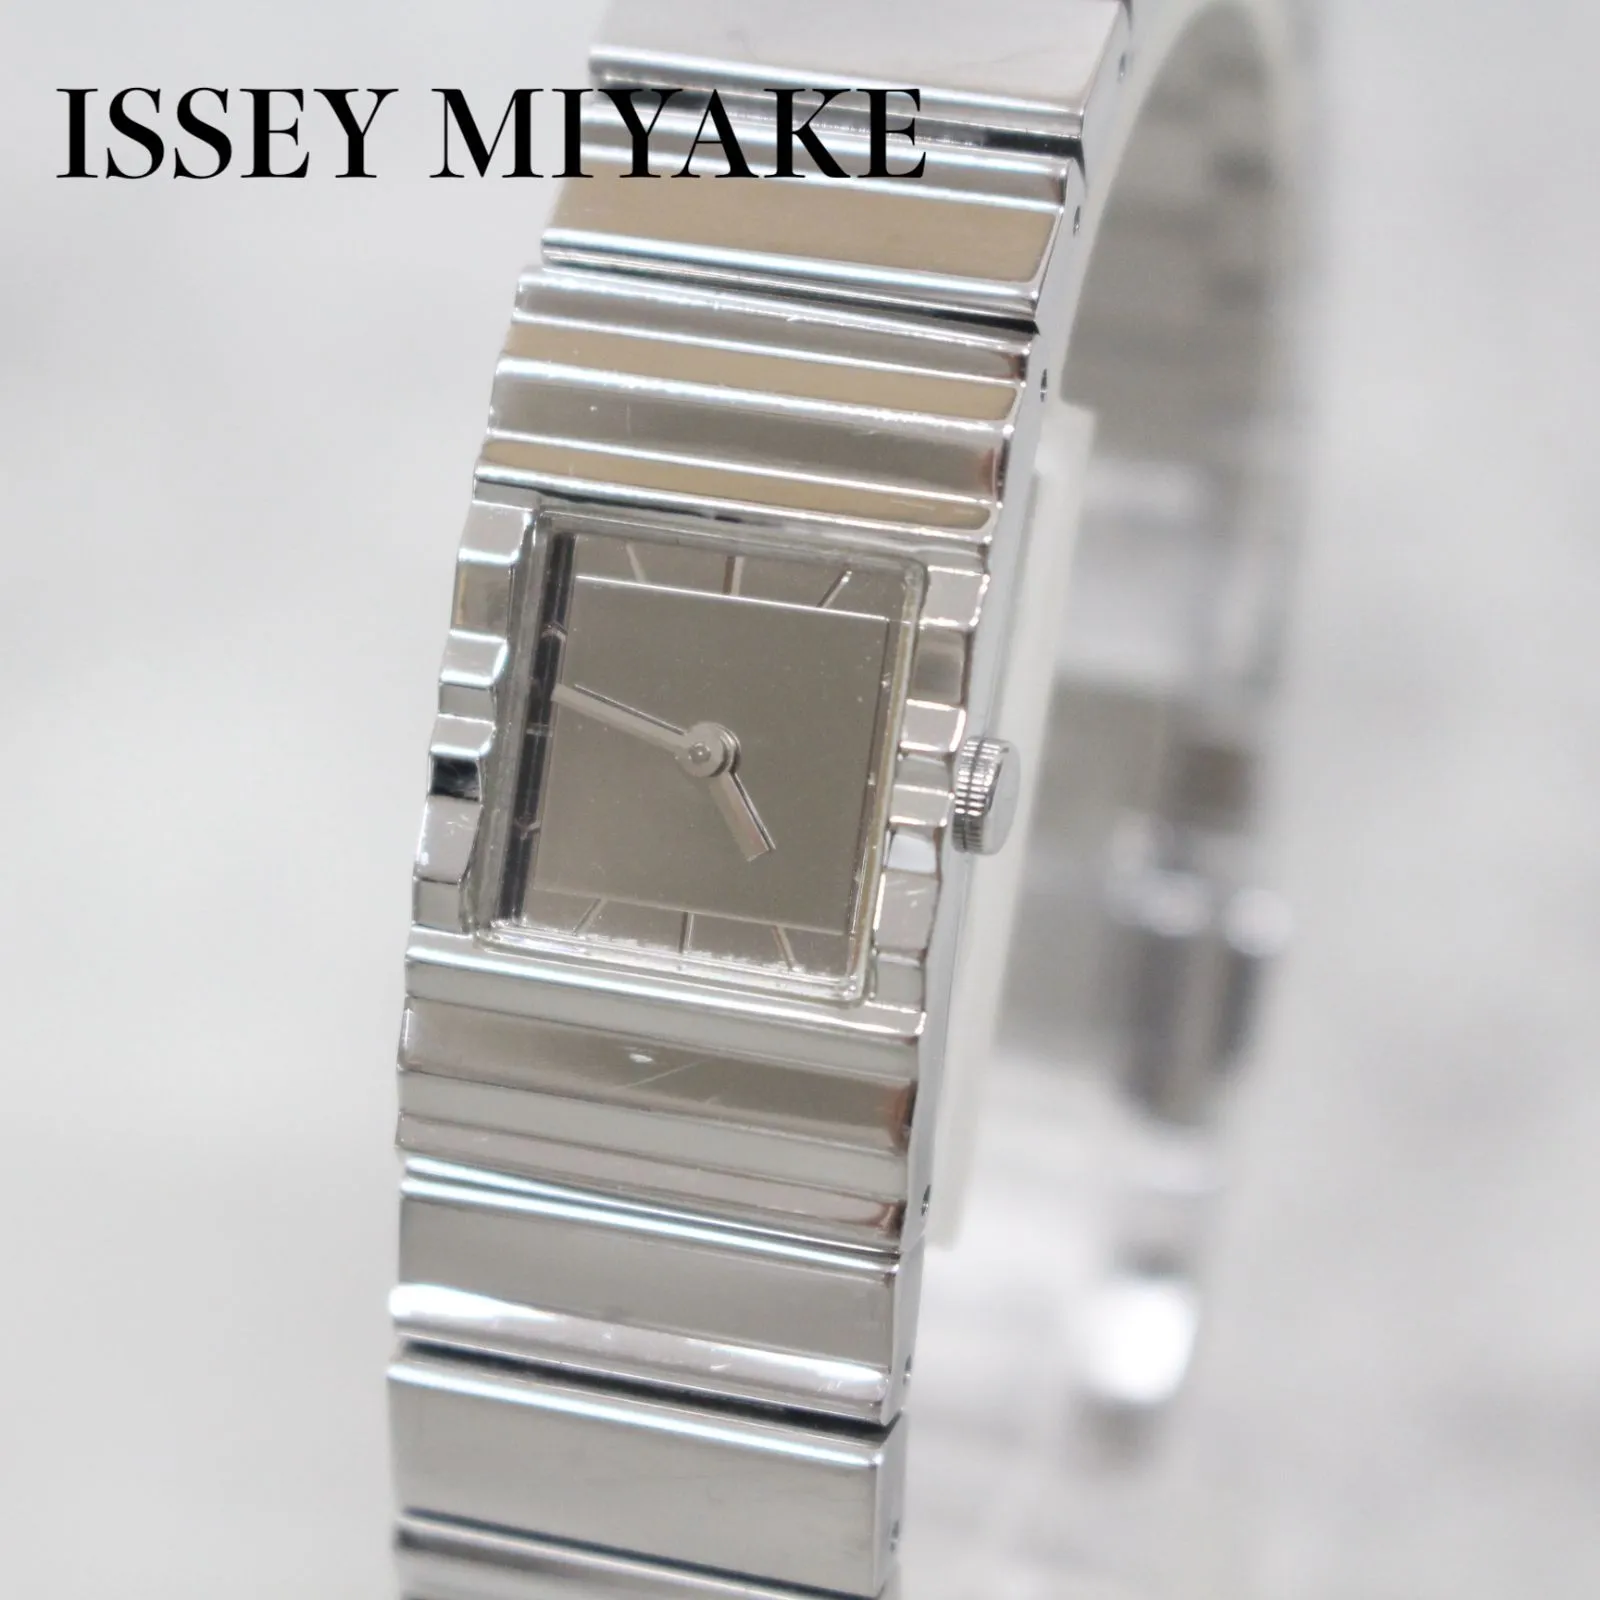 東京都江東区にて イッセイ ミヤケ 吉岡徳仁デザイン 腕時計 VC00-5030  を出張買取させて頂きました。